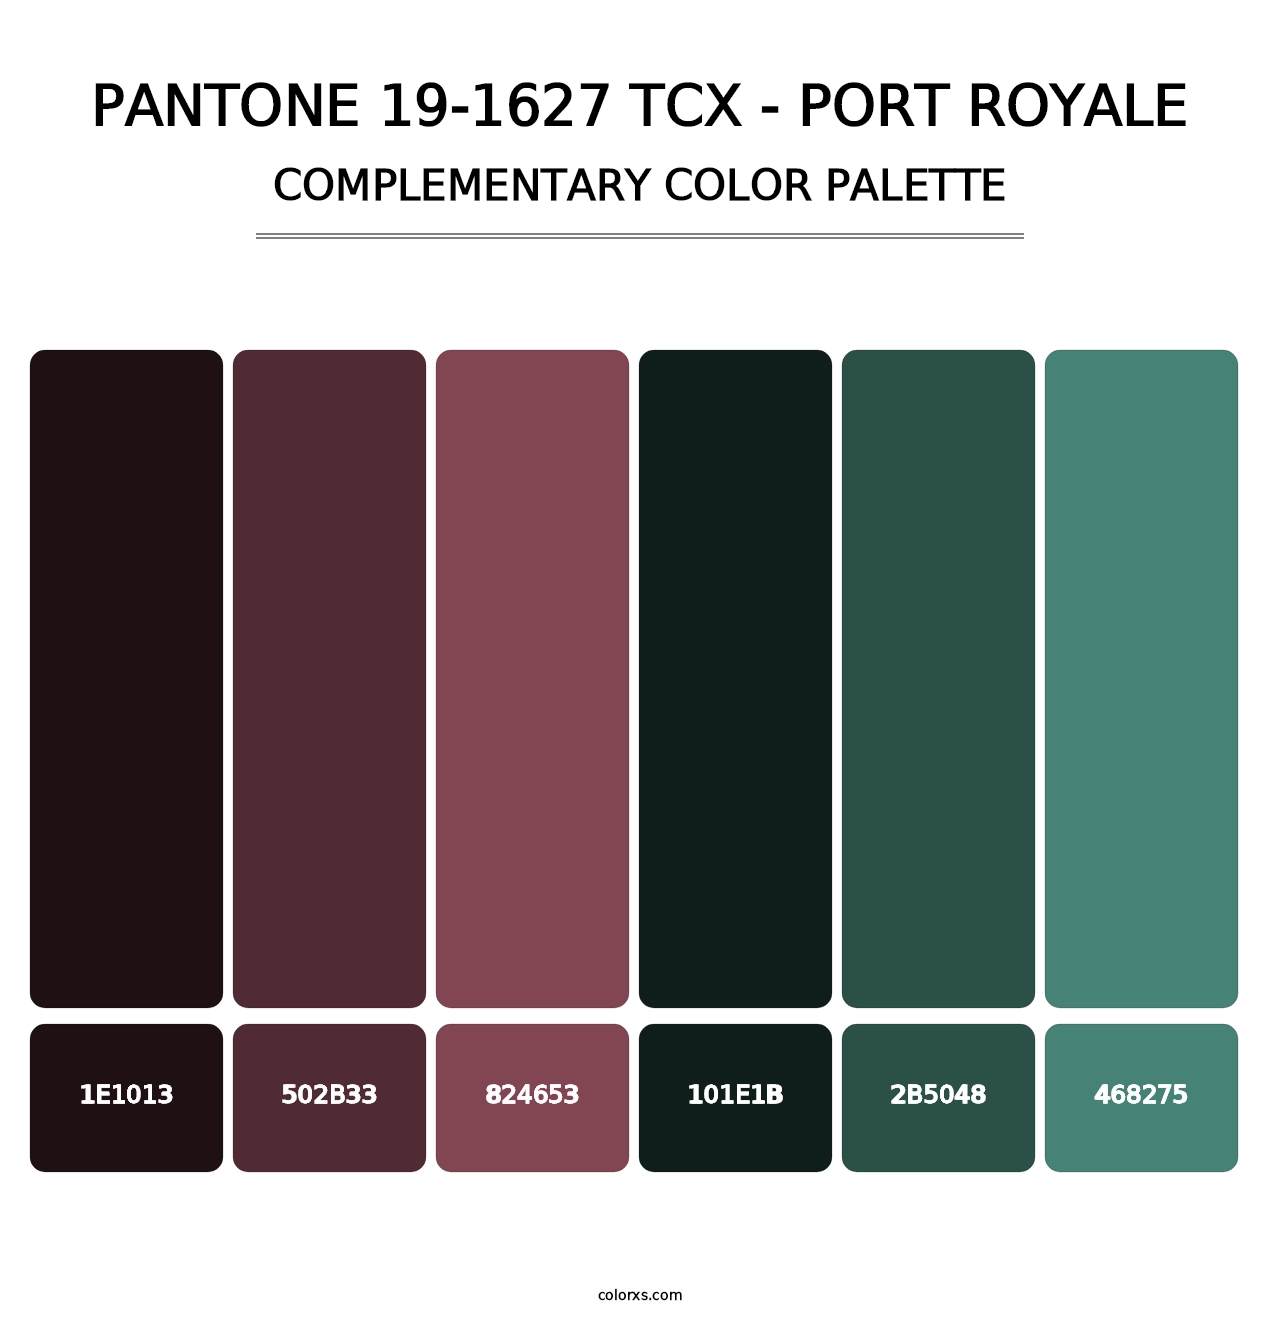 PANTONE 19-1627 TCX - Port Royale - Complementary Color Palette